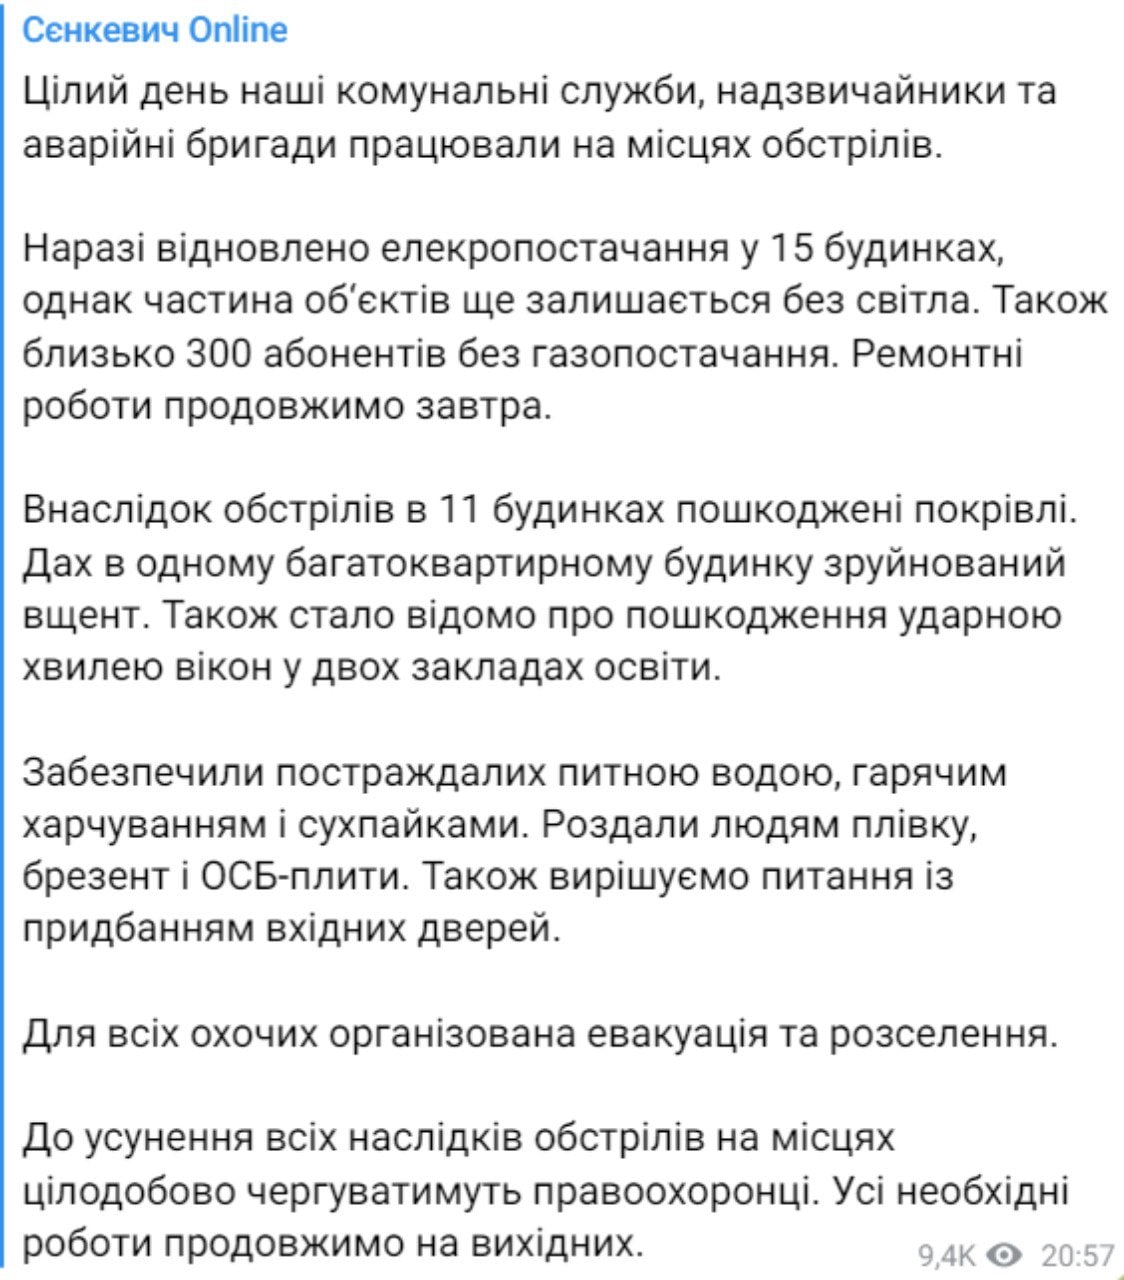 Мэр Николаева рассказал о последствиях обстрела в городе